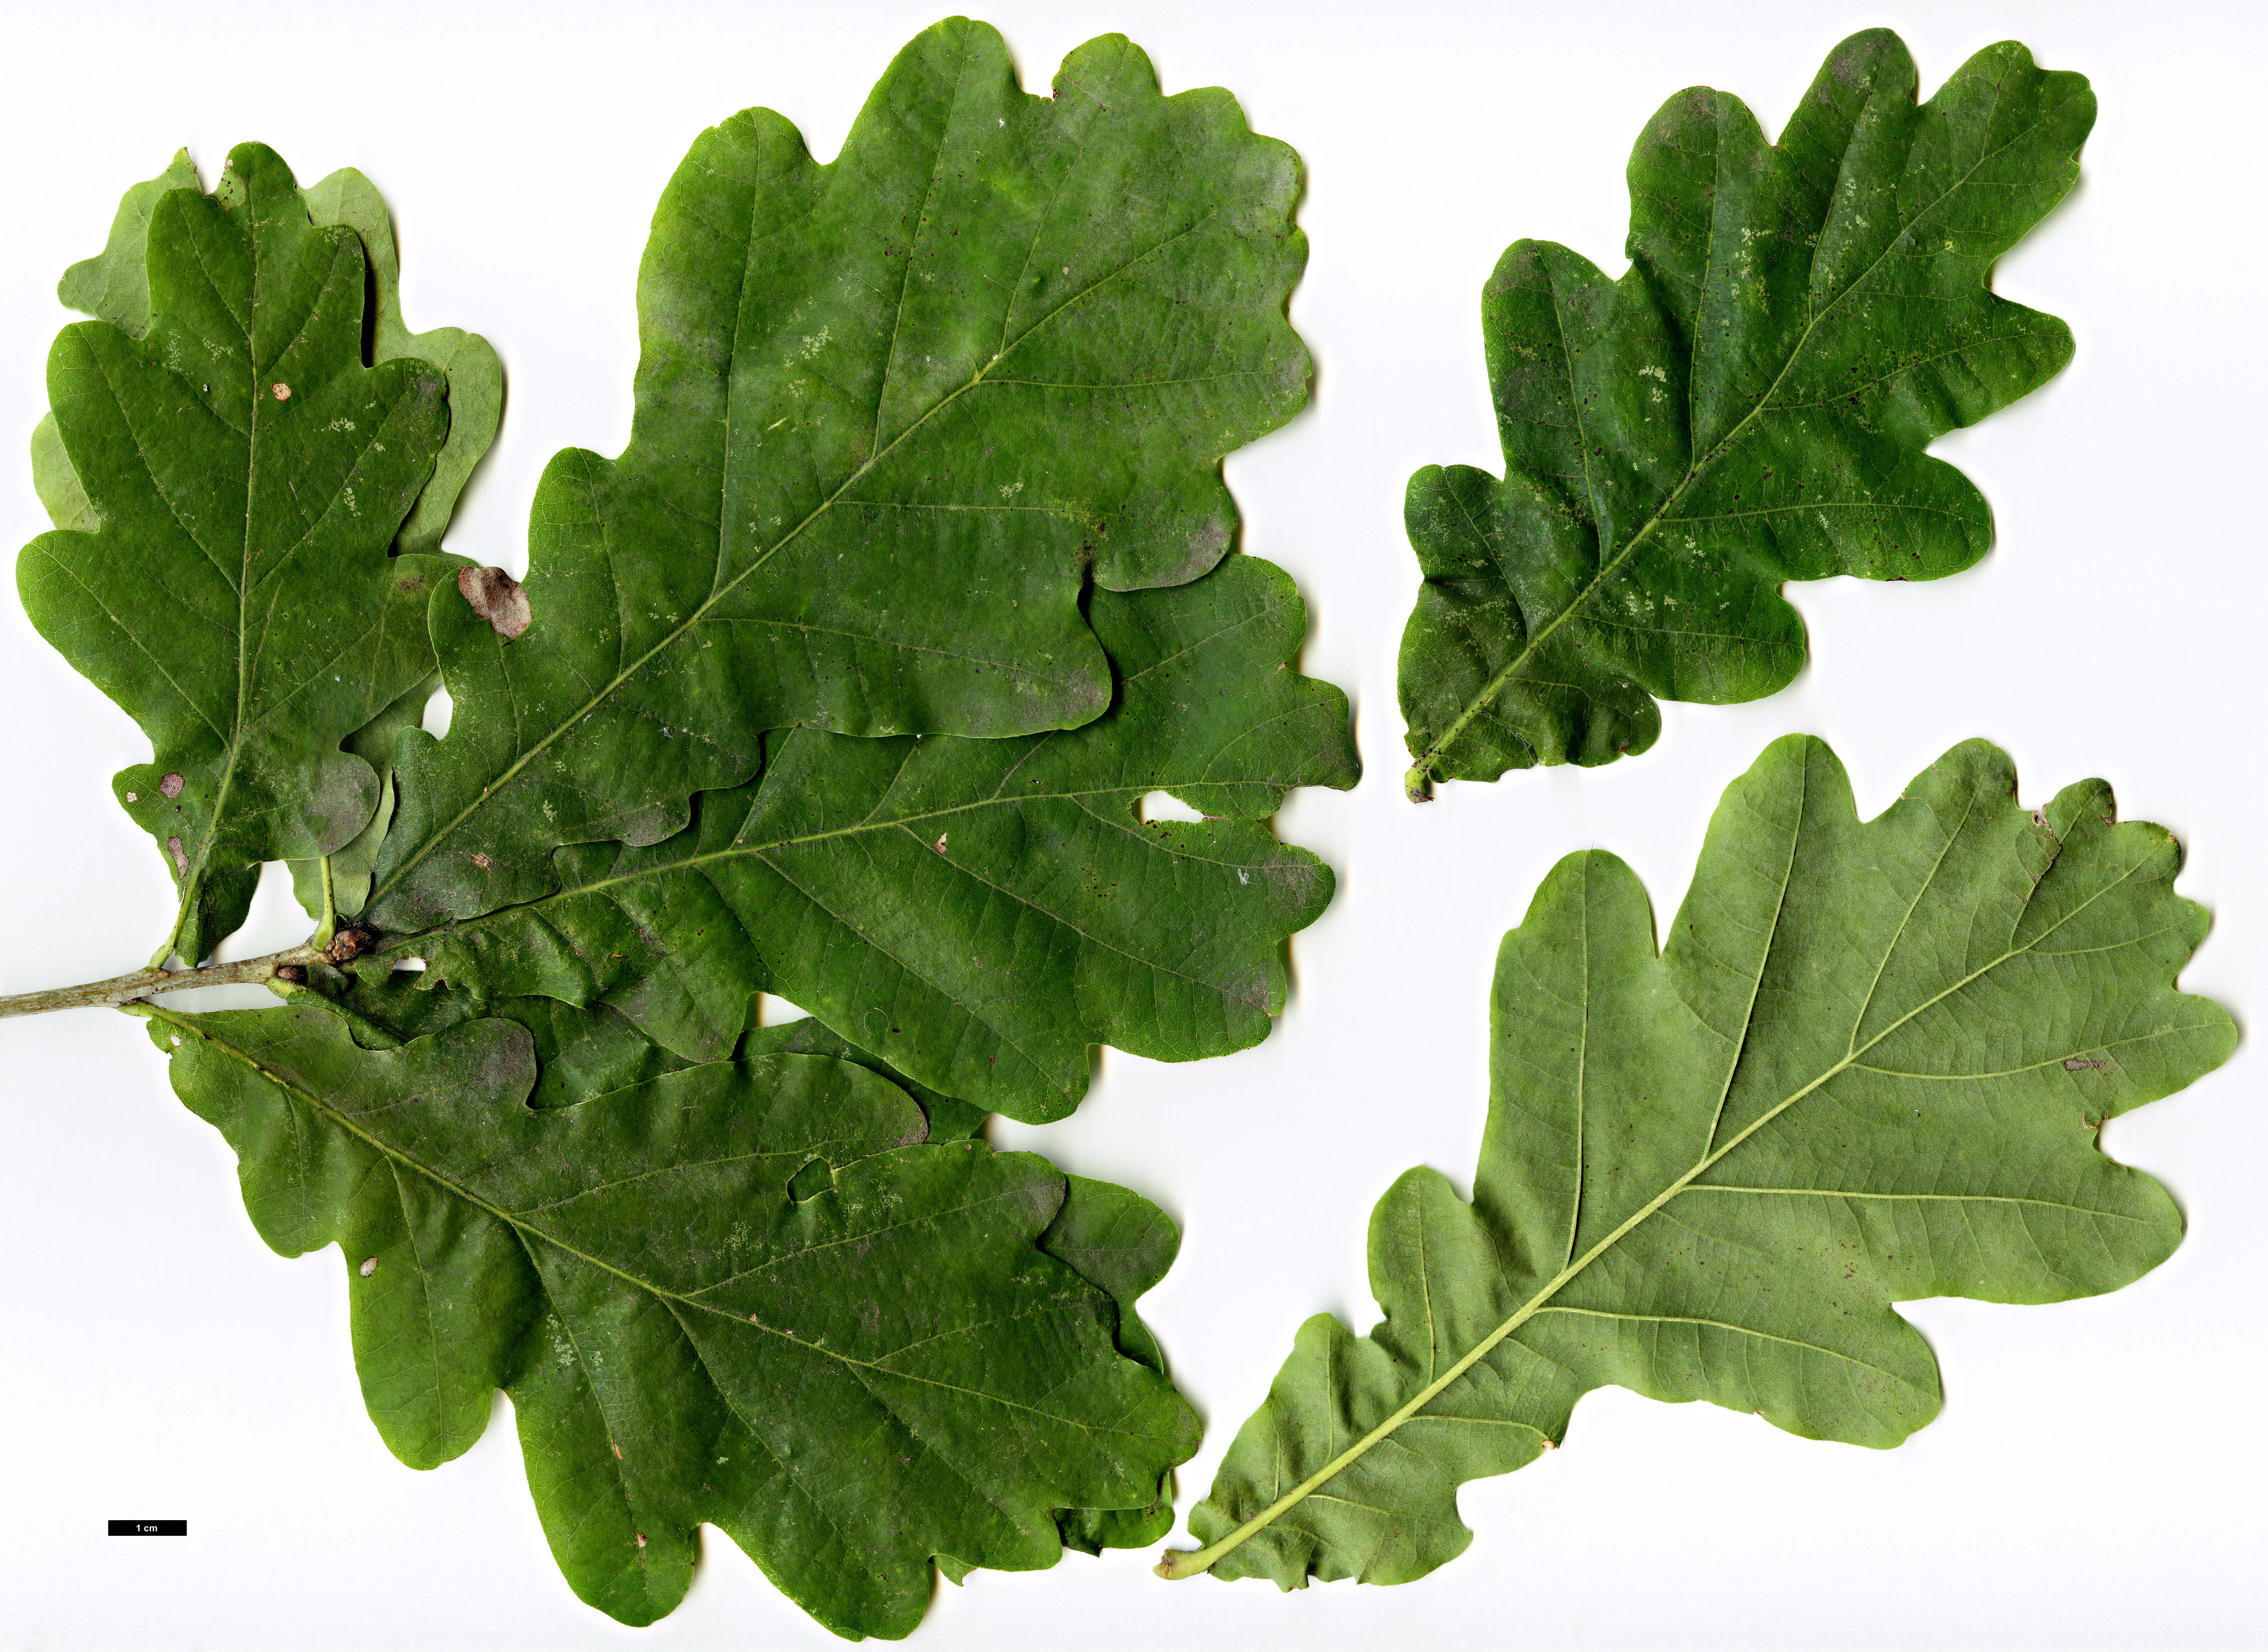 High resolution image: Family: Fagaceae - Genus: Quercus - Taxon: robur - SpeciesSub: subsp. brutia 